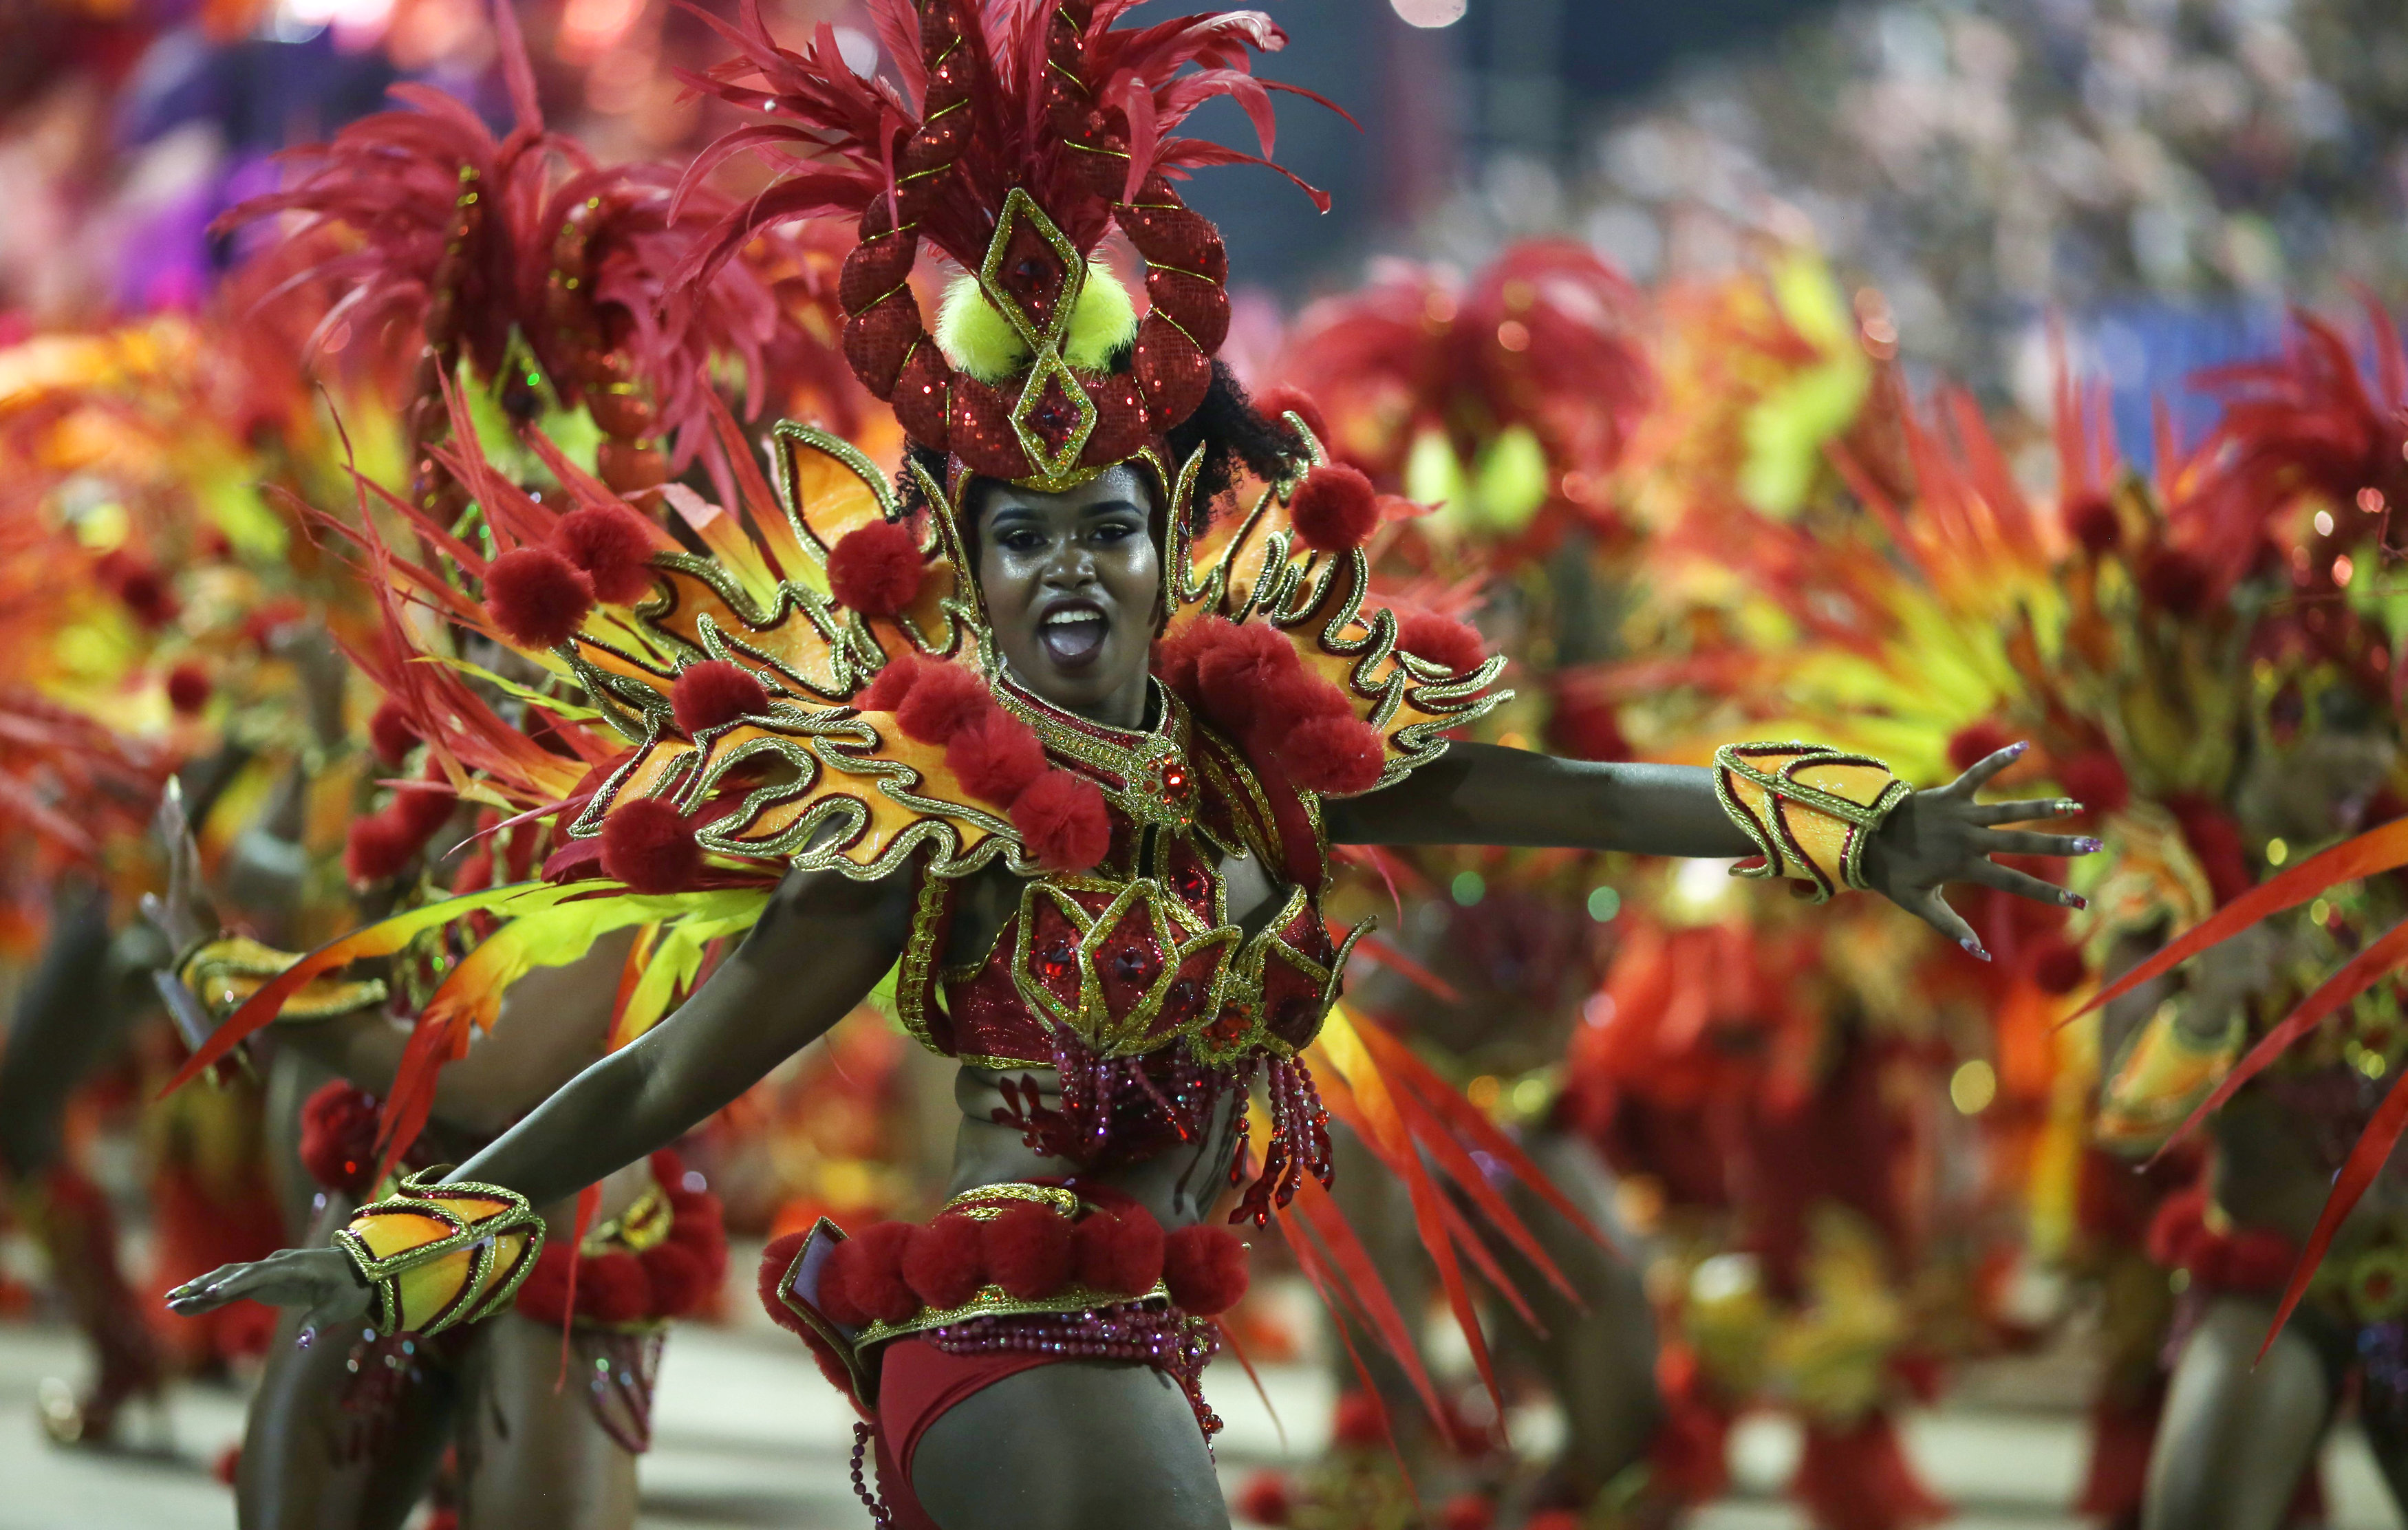 عروض فنية فى احتفالات كرنفال احياء رقصة السامبا بالبرازيل